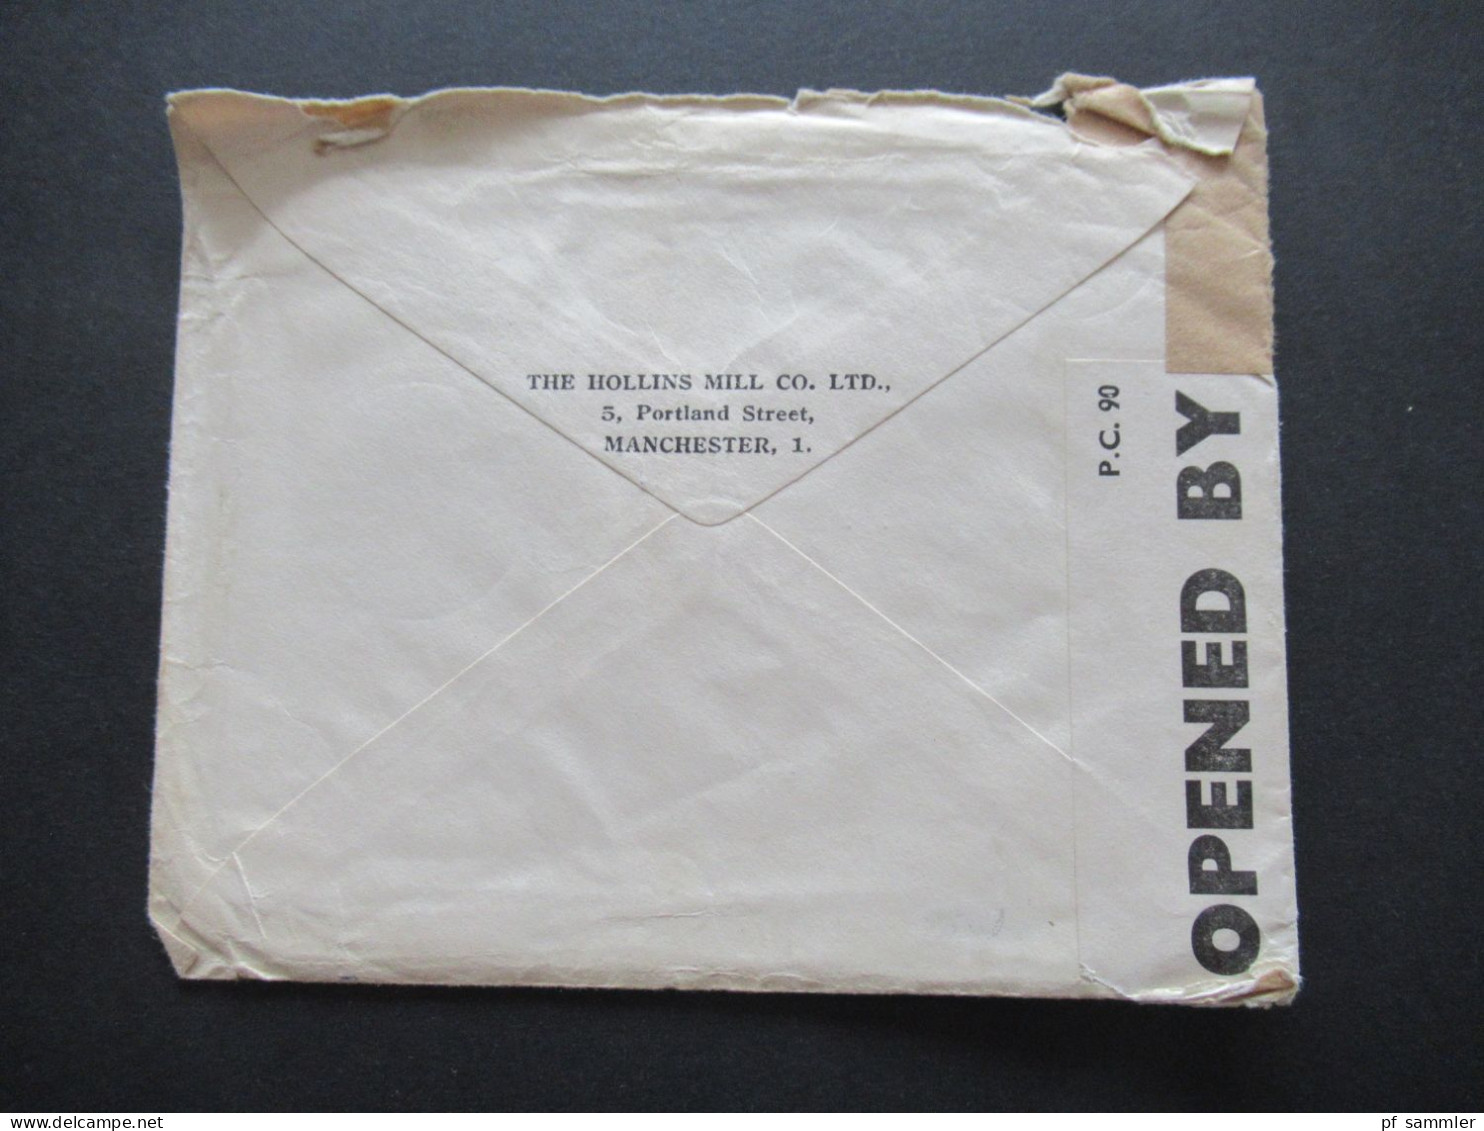 GB mit Perfin 1941 POW Kriegsgefangenenpost mit Zensurstreifen Opened by Examiner 3913 Hemer Lazarett Oflag geprüft